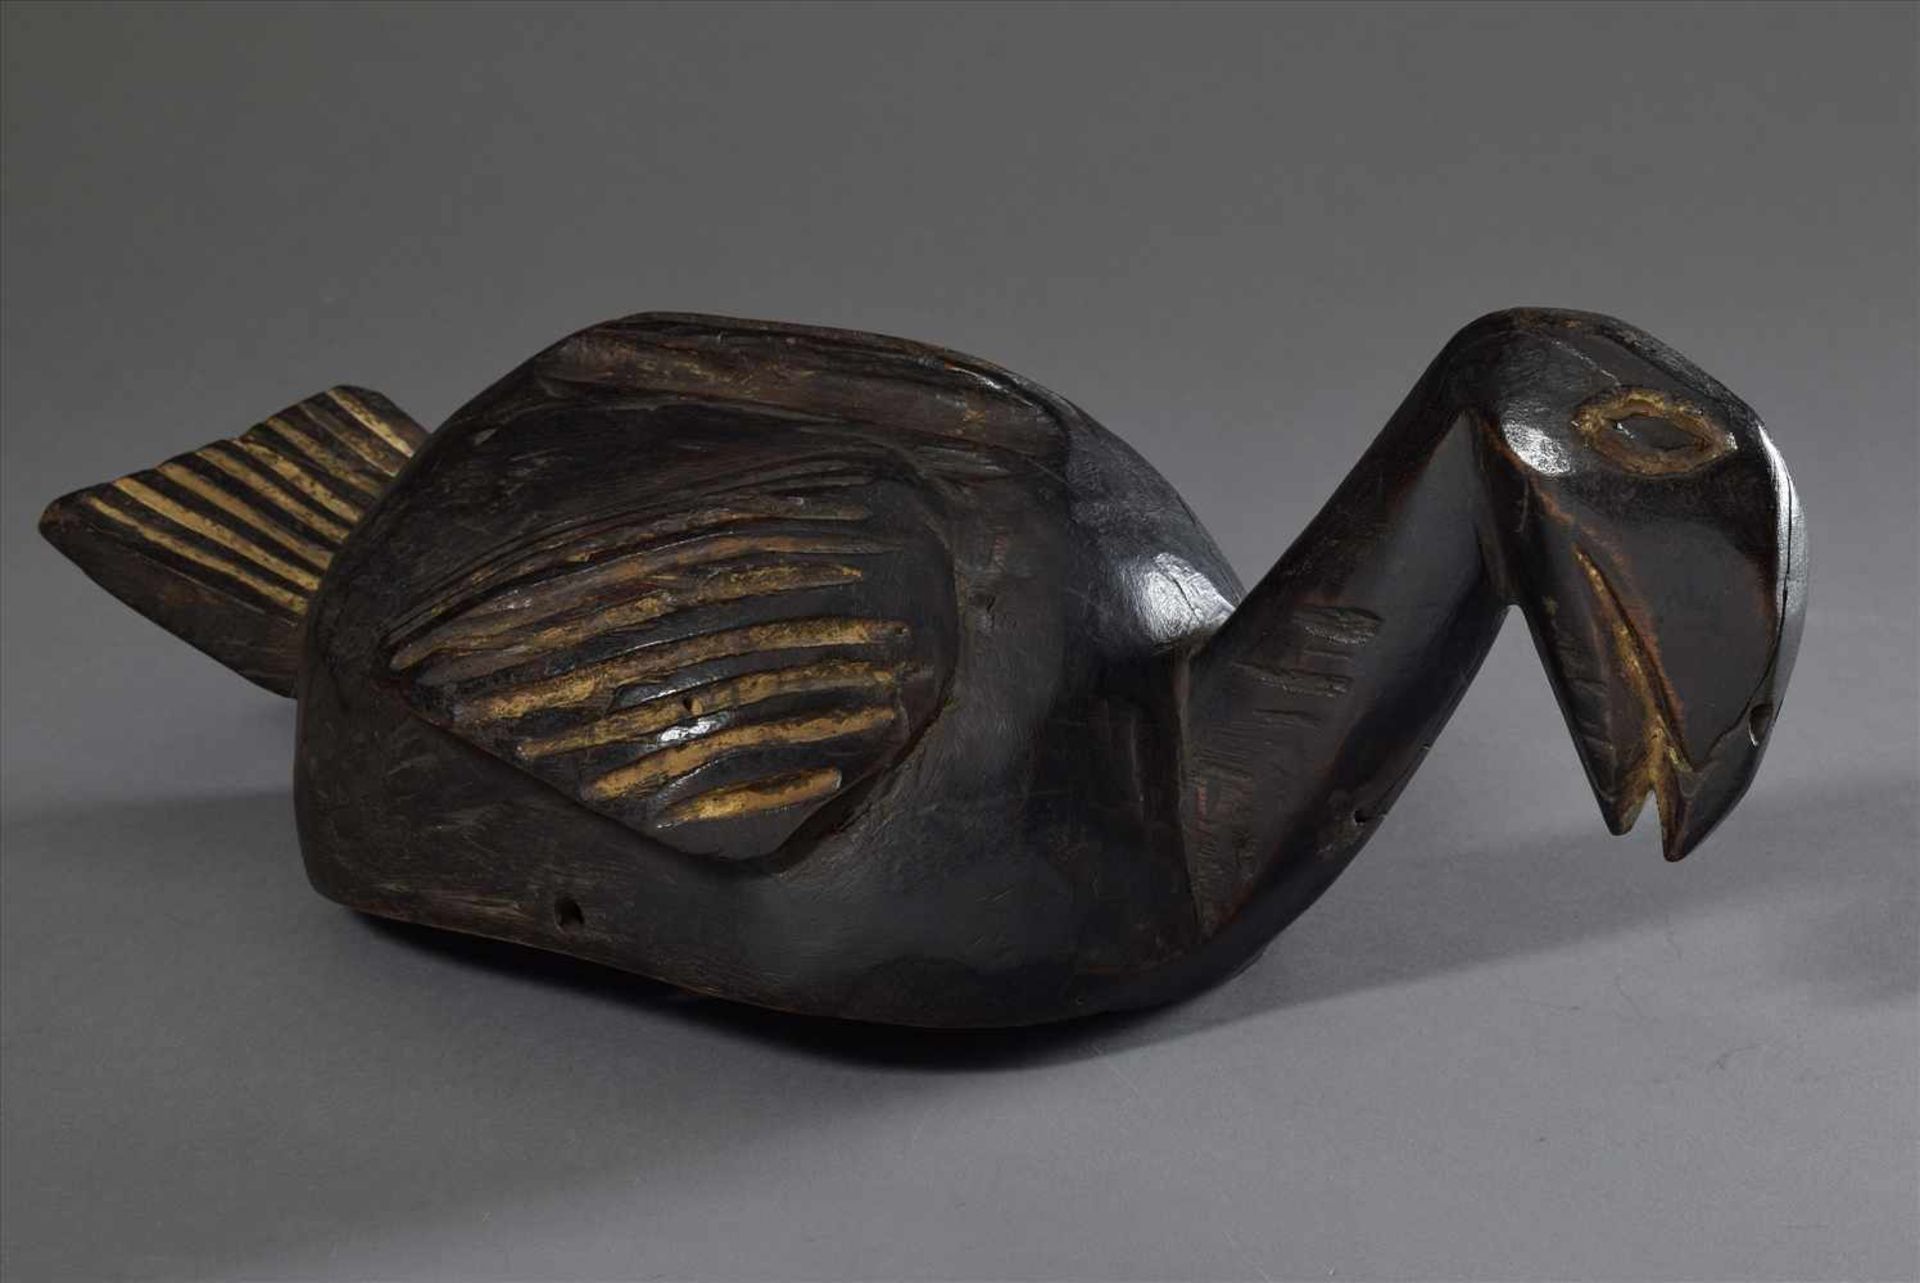 Aufsatz-/Helmmaske der Kosi/Bamileke in Form einer Ente oder Pelikan, Holz, dunkel gefärbt, - Image 2 of 4